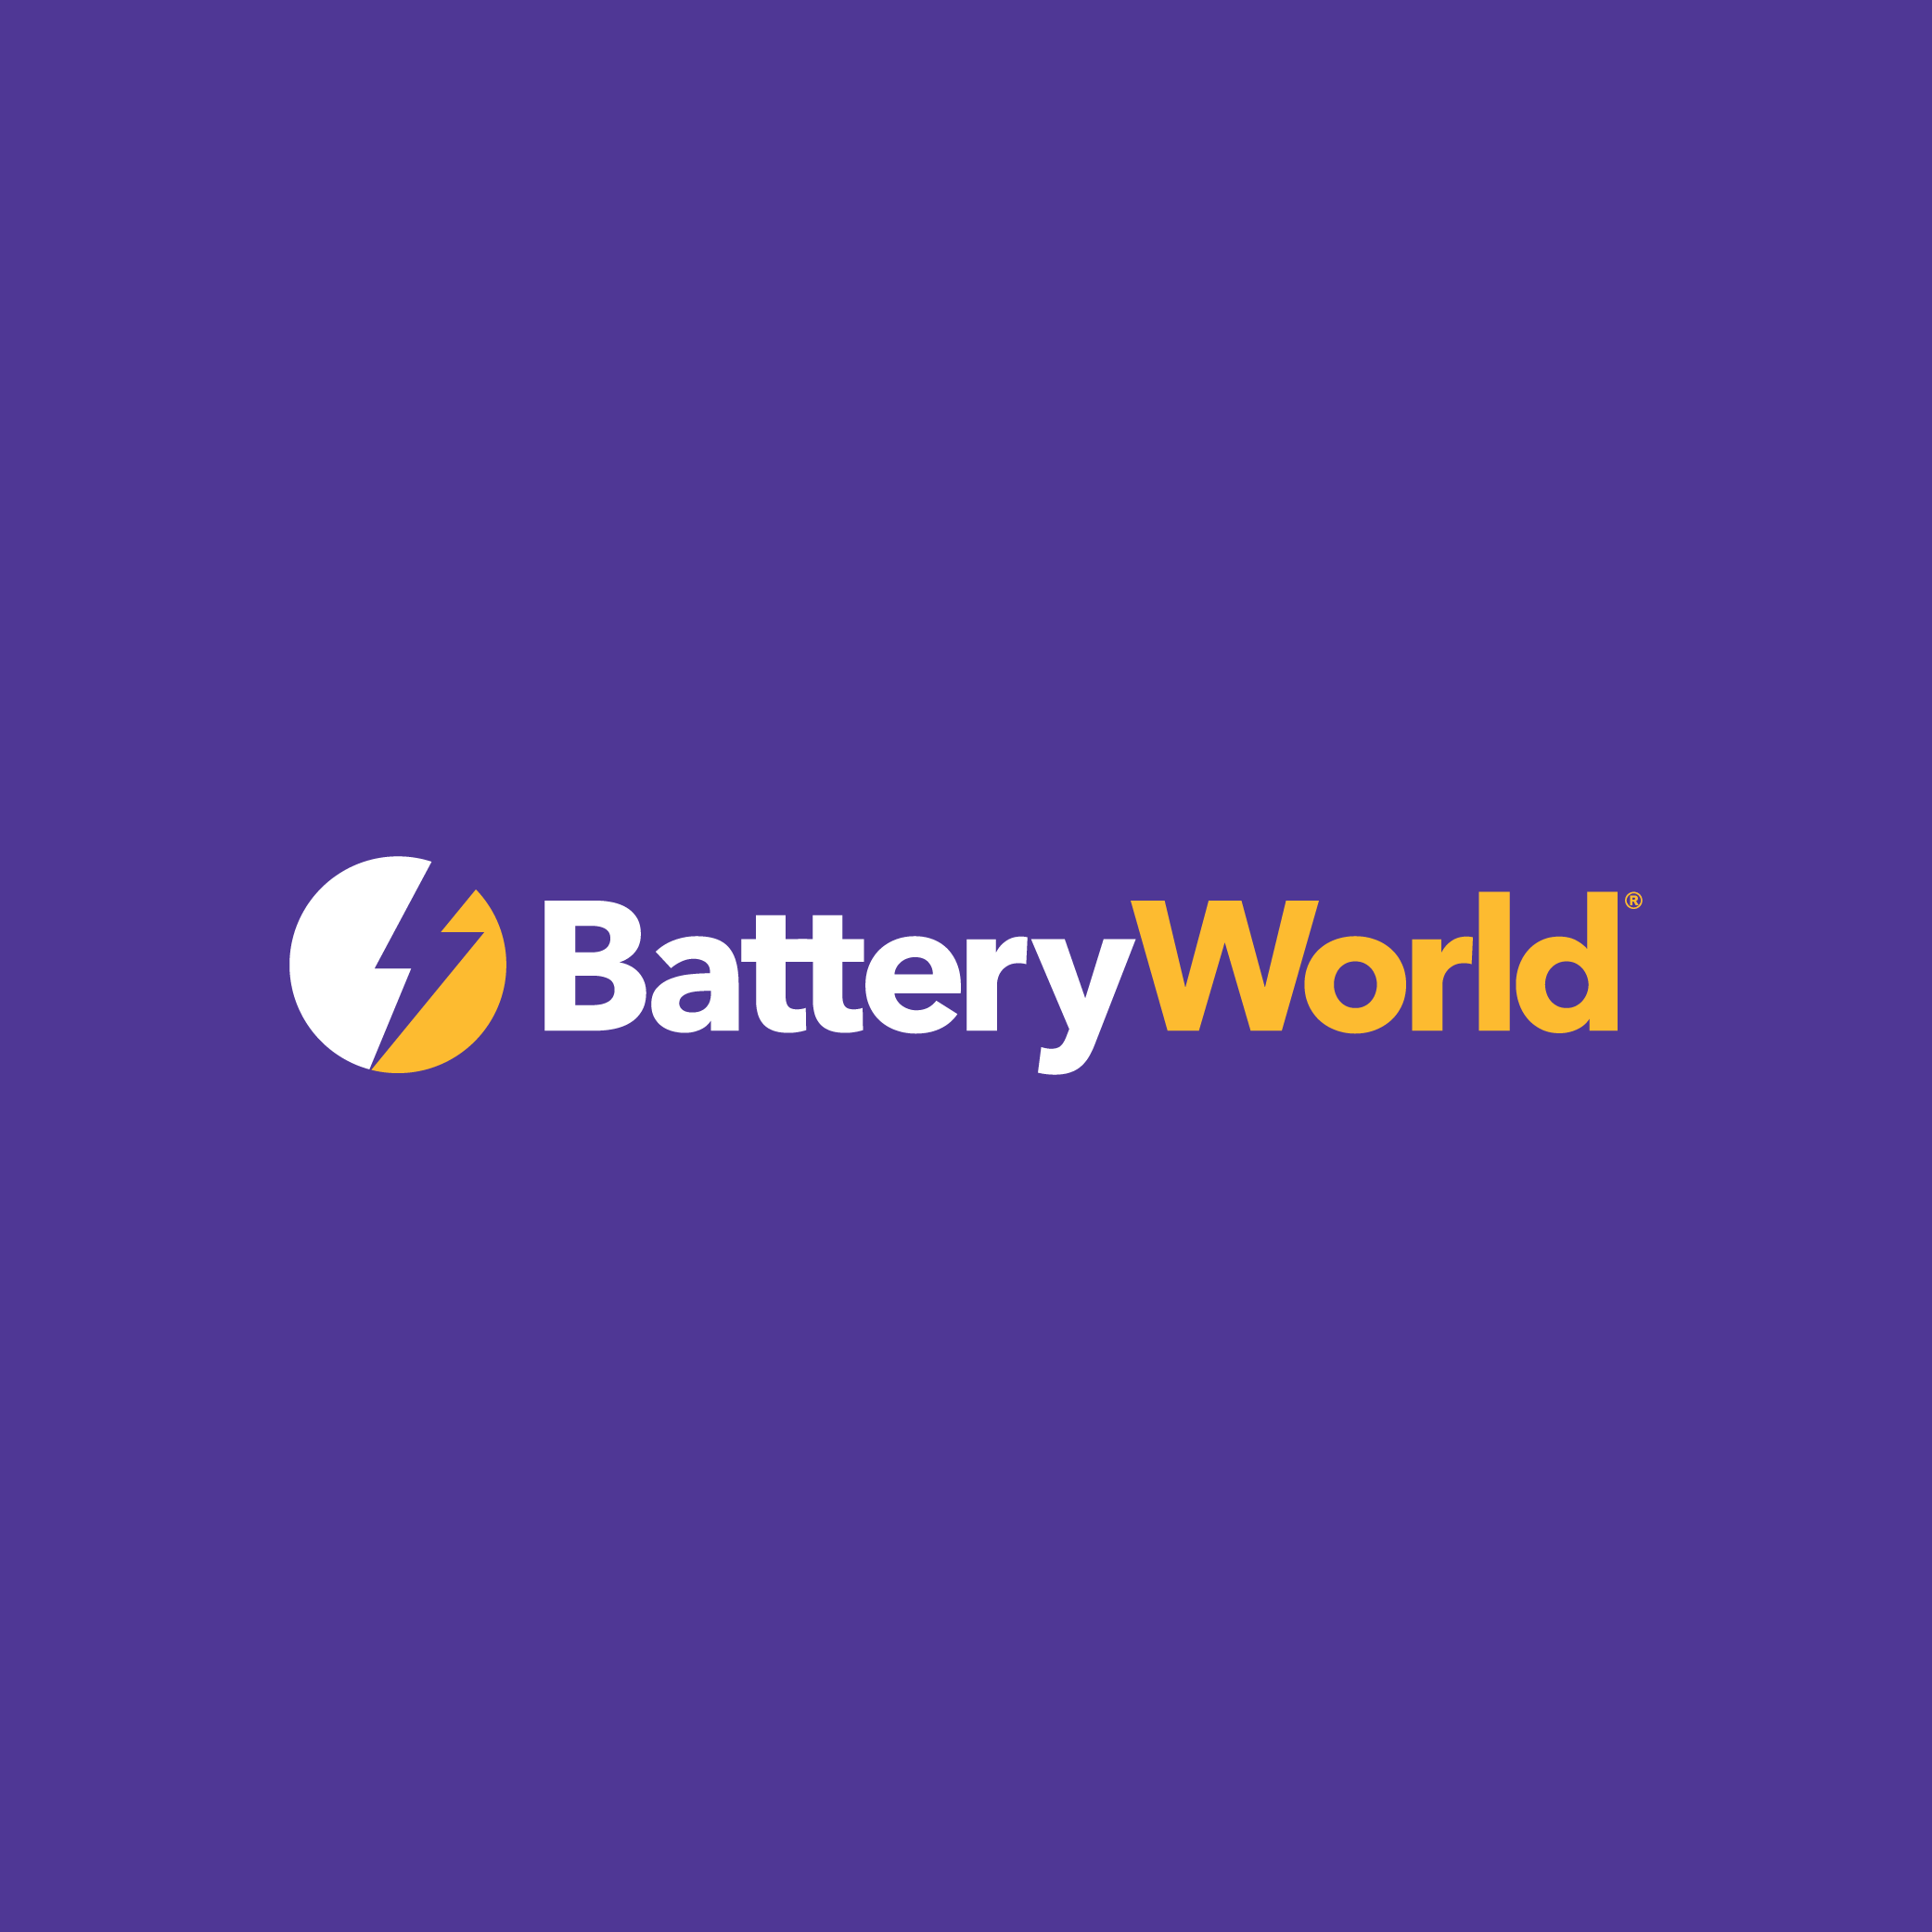 Images Battery World Parramatta